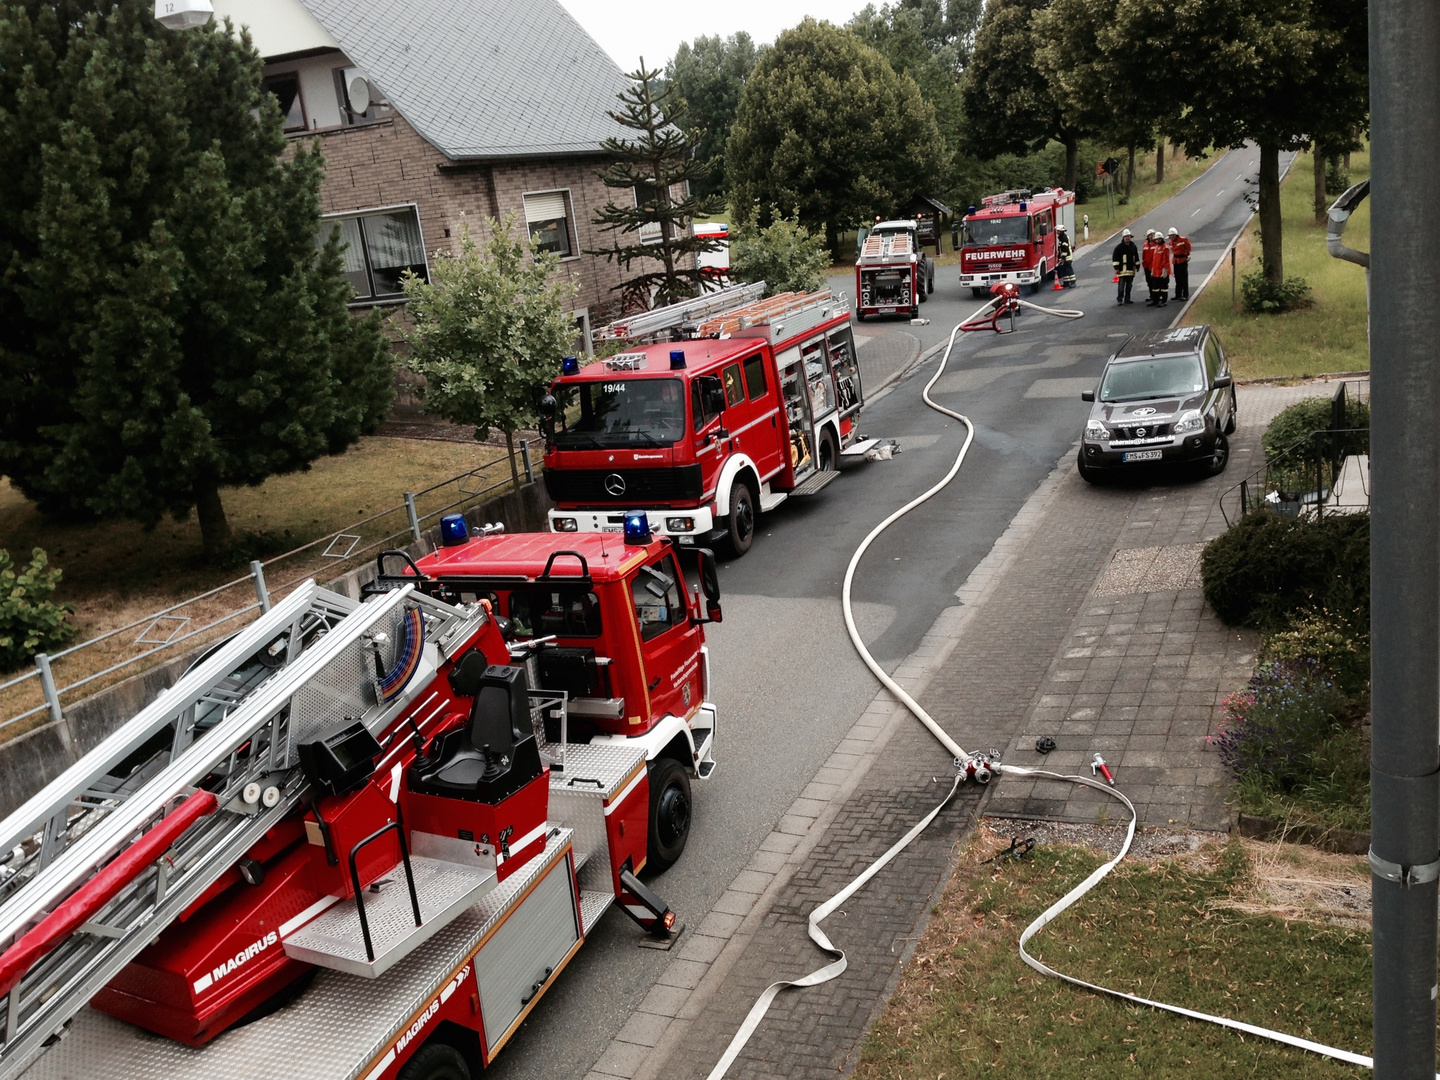 Danke an die Feuerwehren in Nastätten, Gemmerich, Miehlen, Himmighofen und unseren Schornsteinfeger